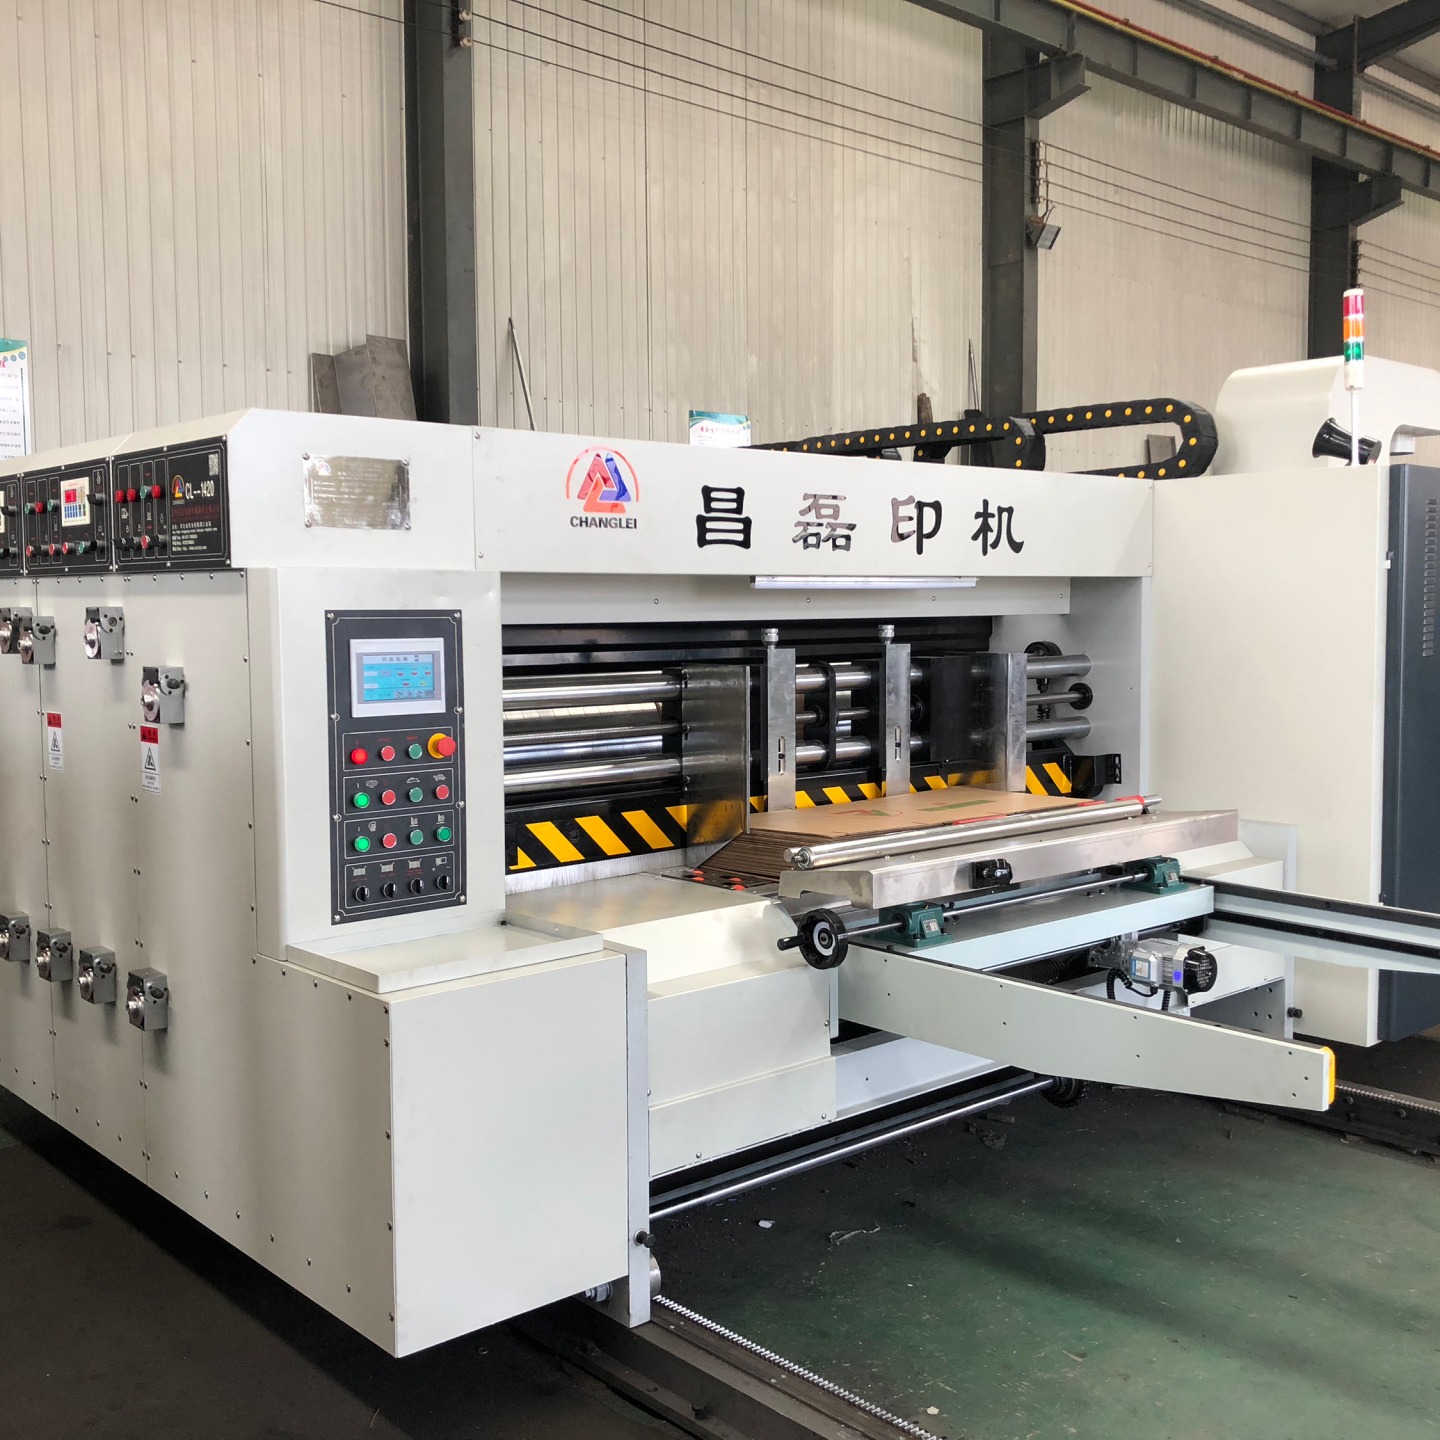 昌磊厂家纸箱机械设备工厂    生产高速水墨印刷机  双色印刷开槽机   模切机  链条机   加工生产